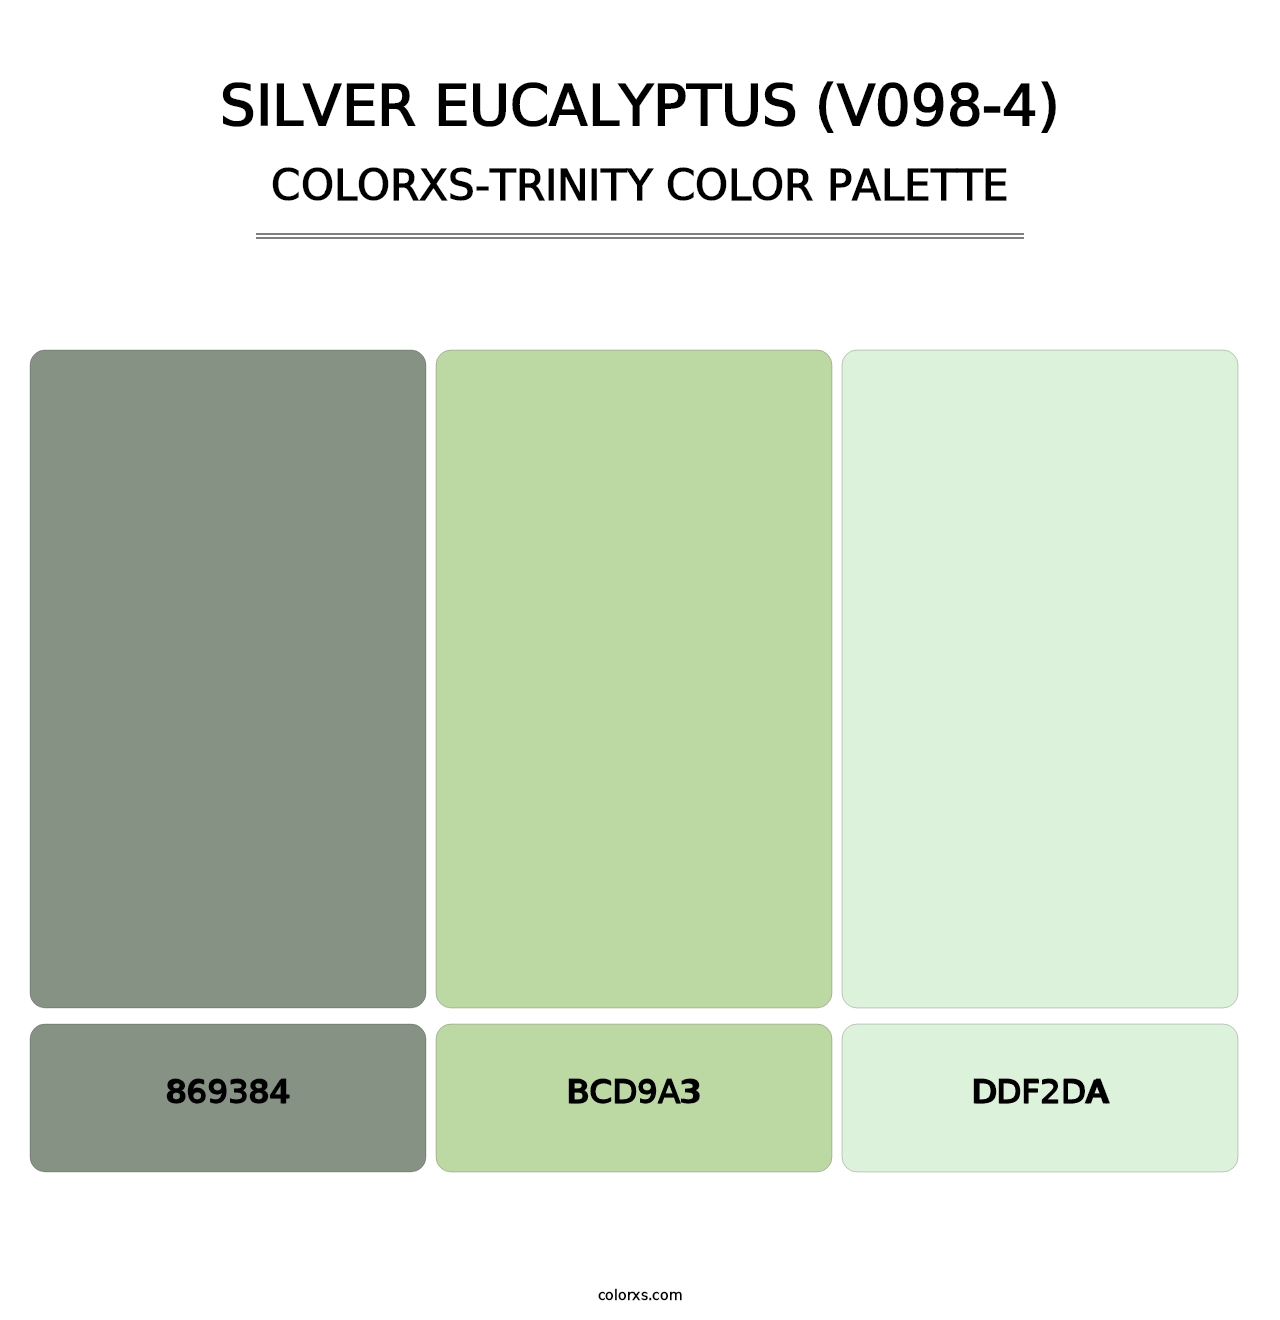 Silver Eucalyptus (V098-4) - Colorxs Trinity Palette